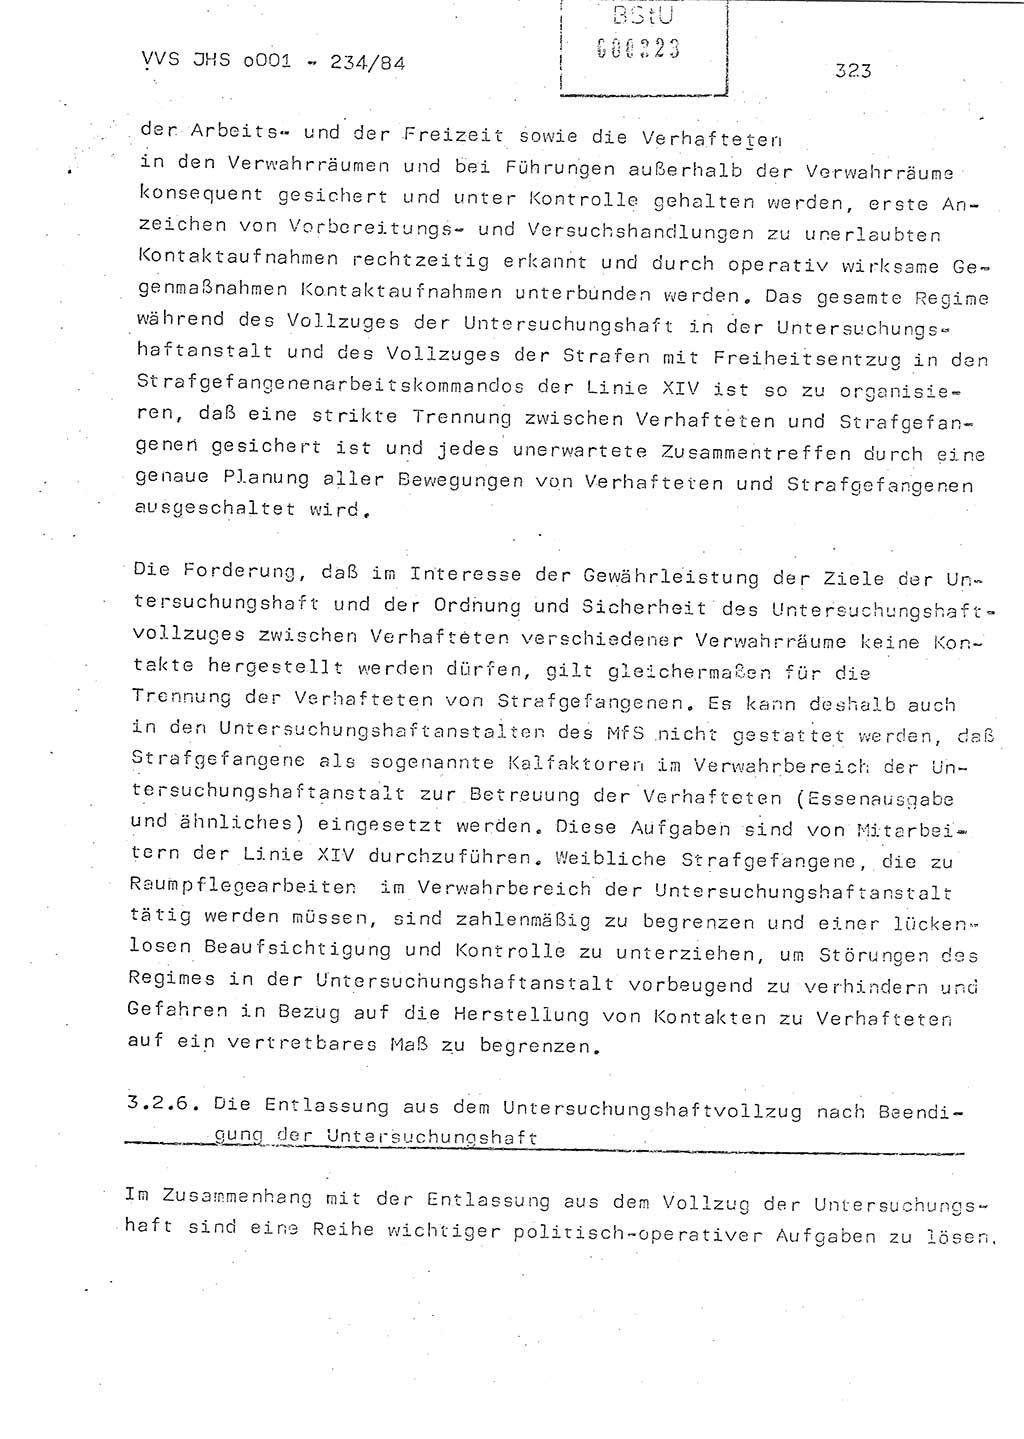 Dissertation Oberst Siegfried Rataizick (Abt. ⅩⅣ), Oberstleutnant Volkmar Heinz (Abt. ⅩⅣ), Oberstleutnant Werner Stein (HA Ⅸ), Hauptmann Heinz Conrad (JHS), Ministerium für Staatssicherheit (MfS) [Deutsche Demokratische Republik (DDR)], Juristische Hochschule (JHS), Vertrauliche Verschlußsache (VVS) o001-234/84, Potsdam 1984, Seite 323 (Diss. MfS DDR JHS VVS o001-234/84 1984, S. 323)